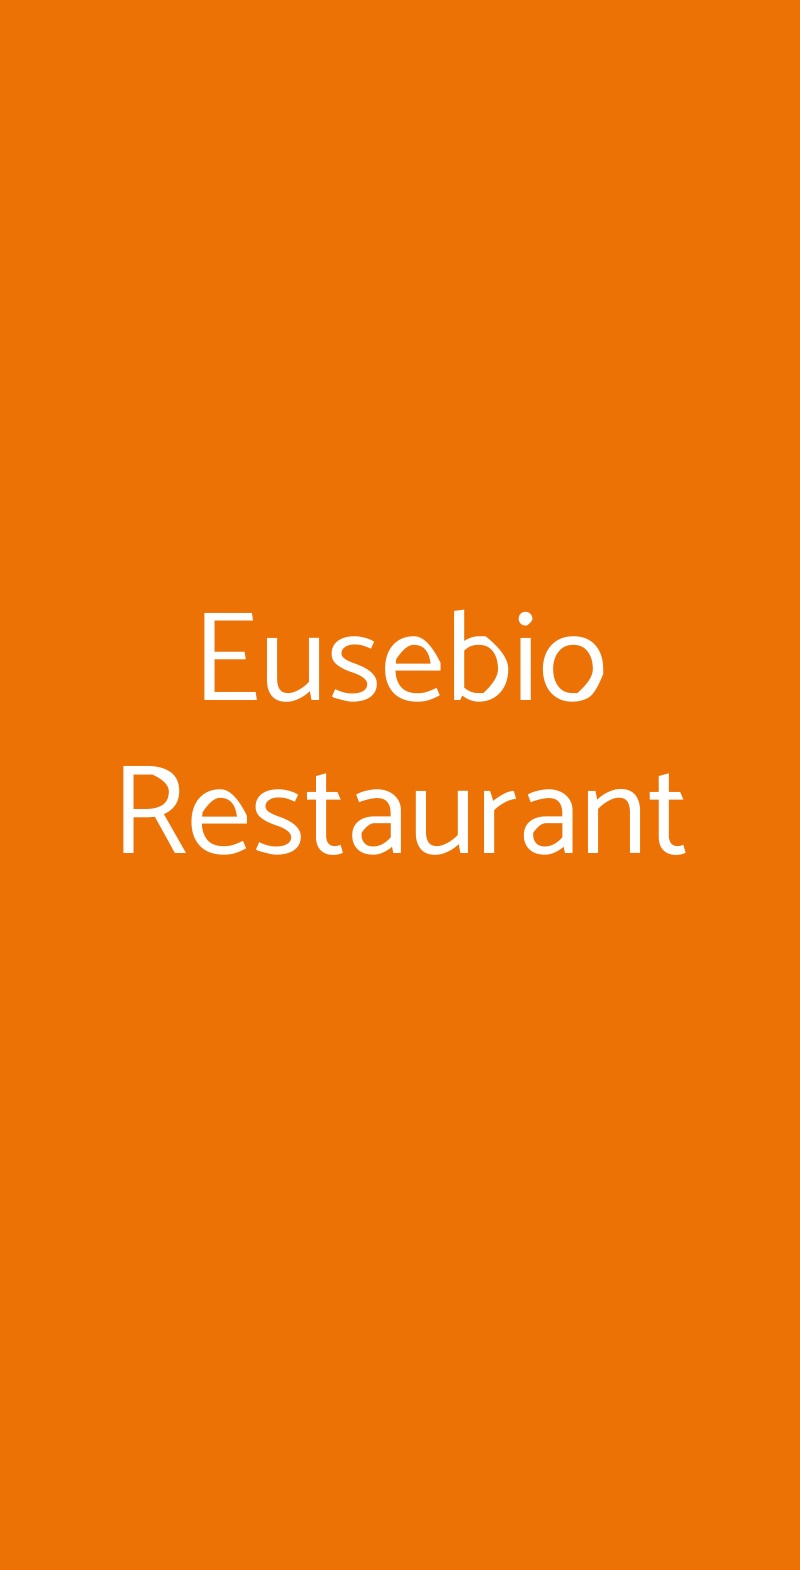 Eusebio Restaurant Catania menù 1 pagina